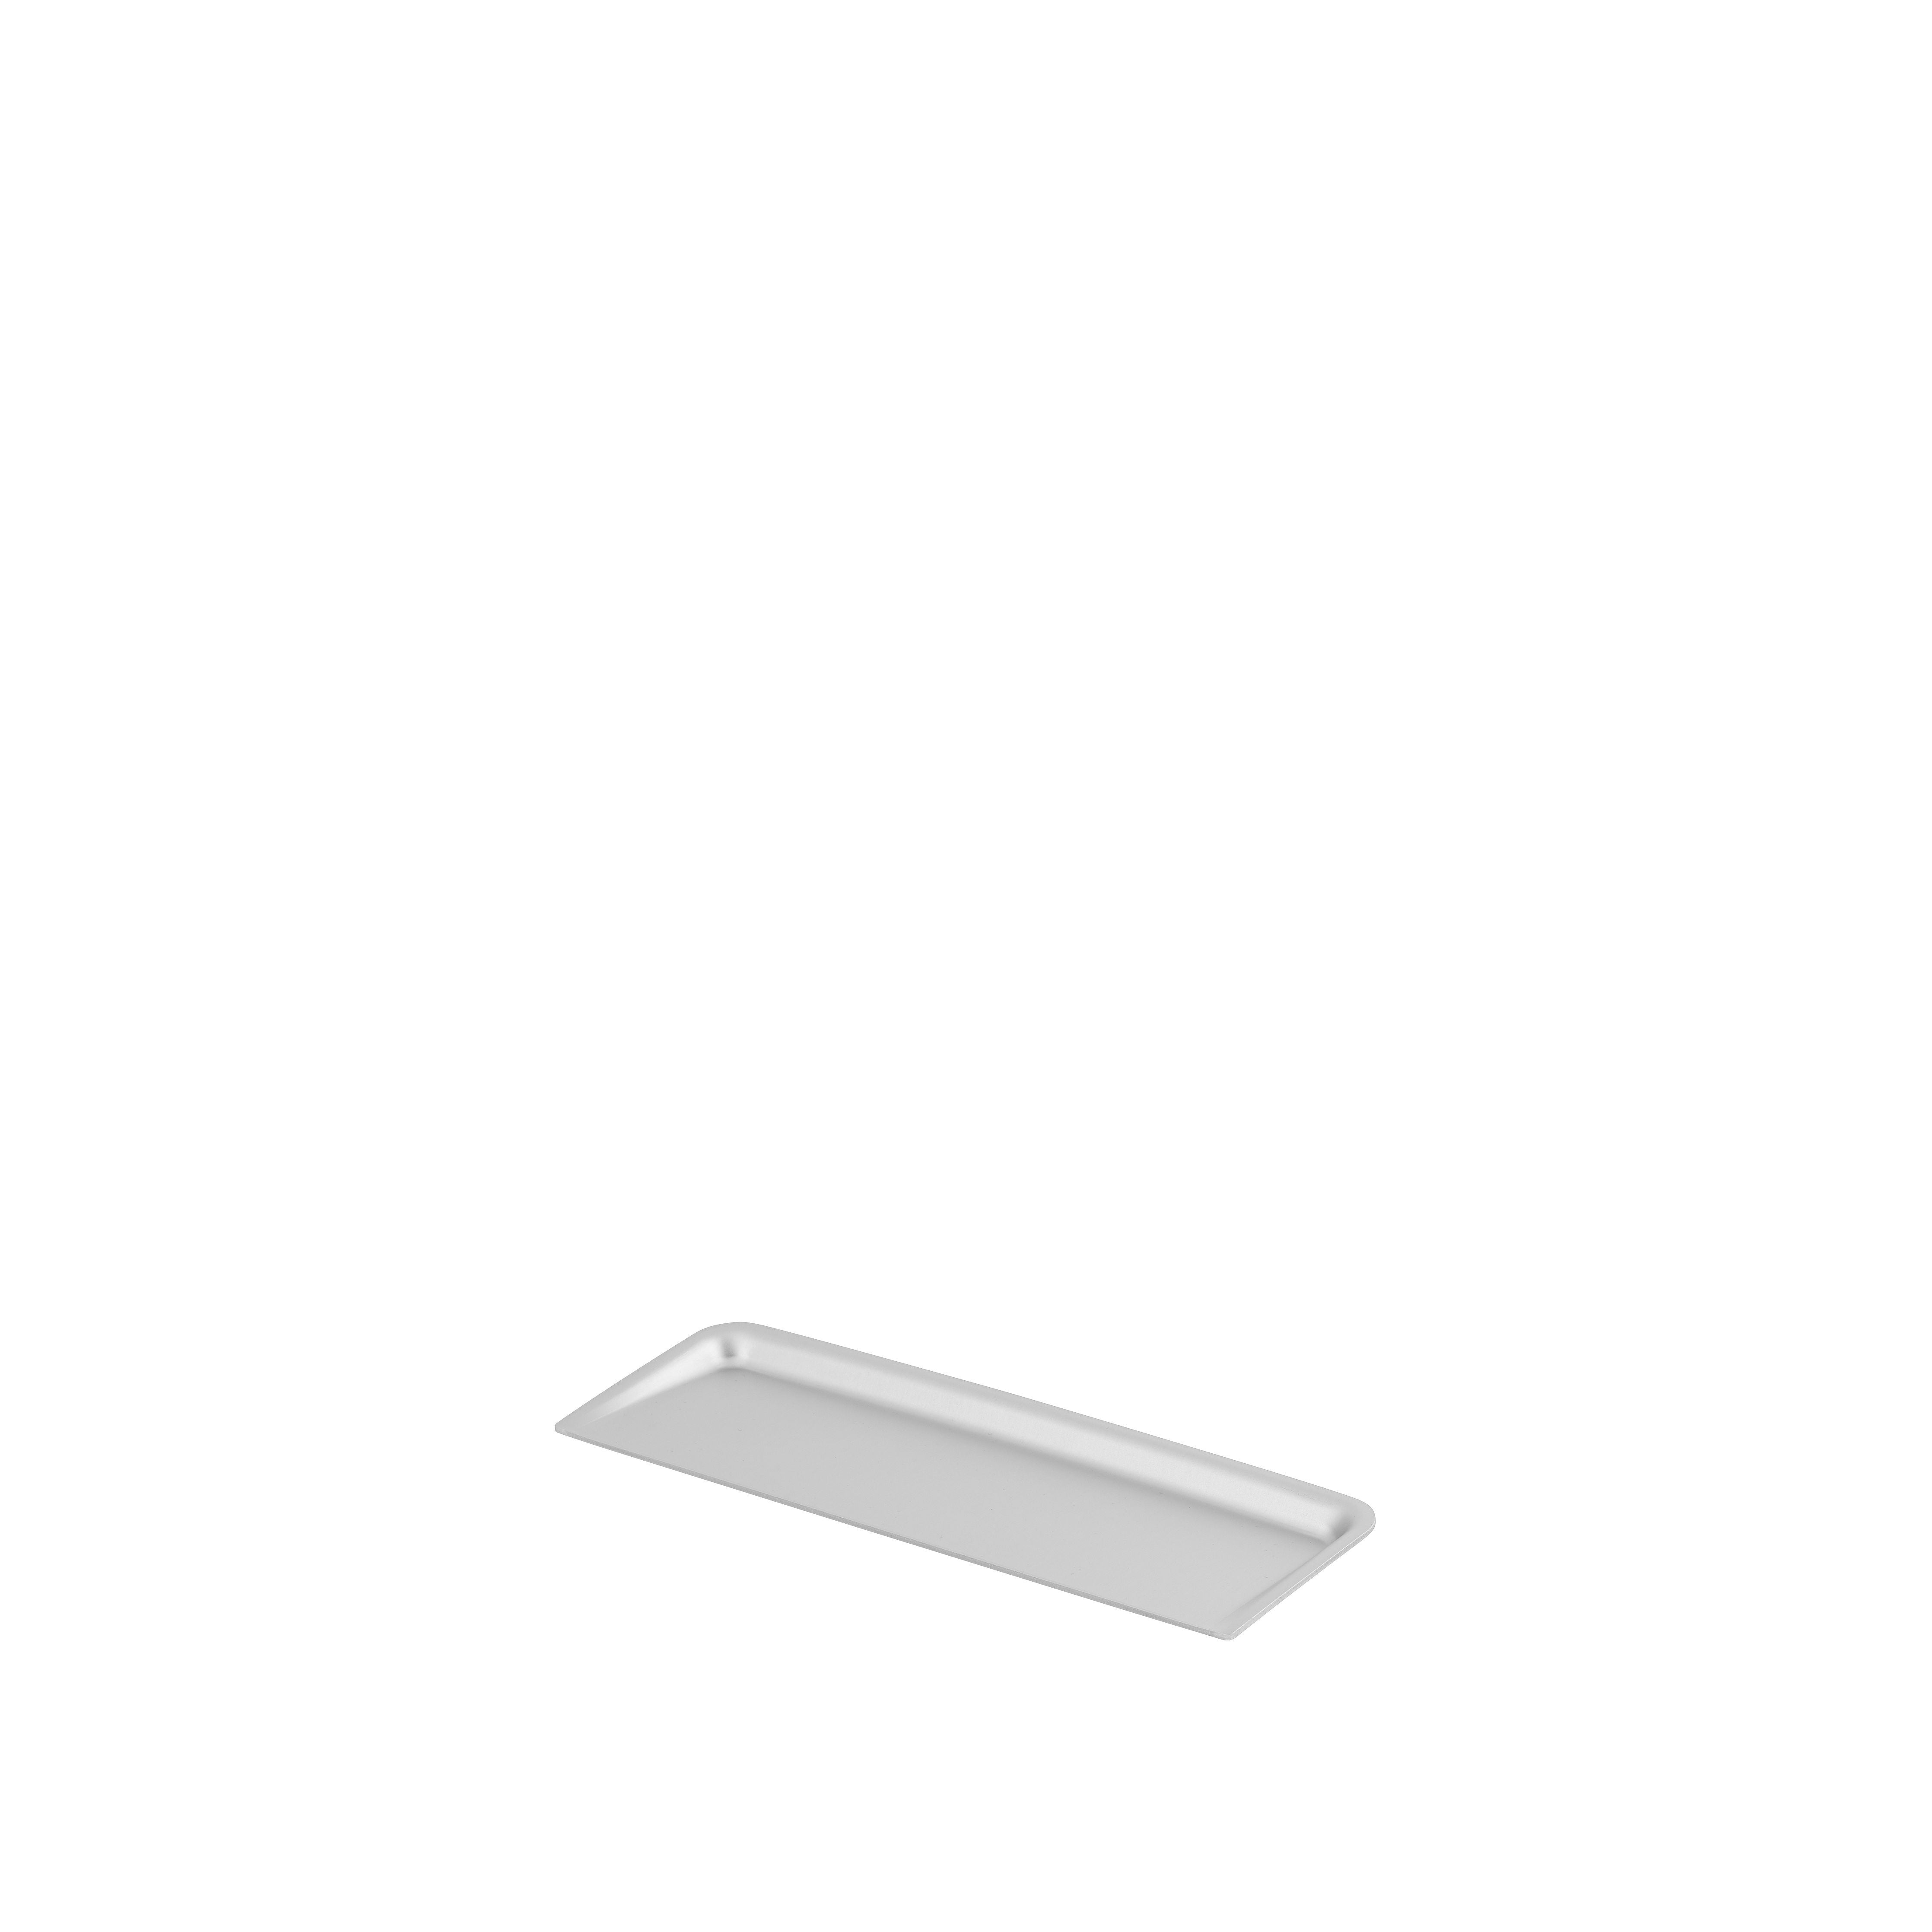 Muuto Arrange Desktop Series / Lid 8 x 24 cm / 3,1 x 9,4 ”aluminium